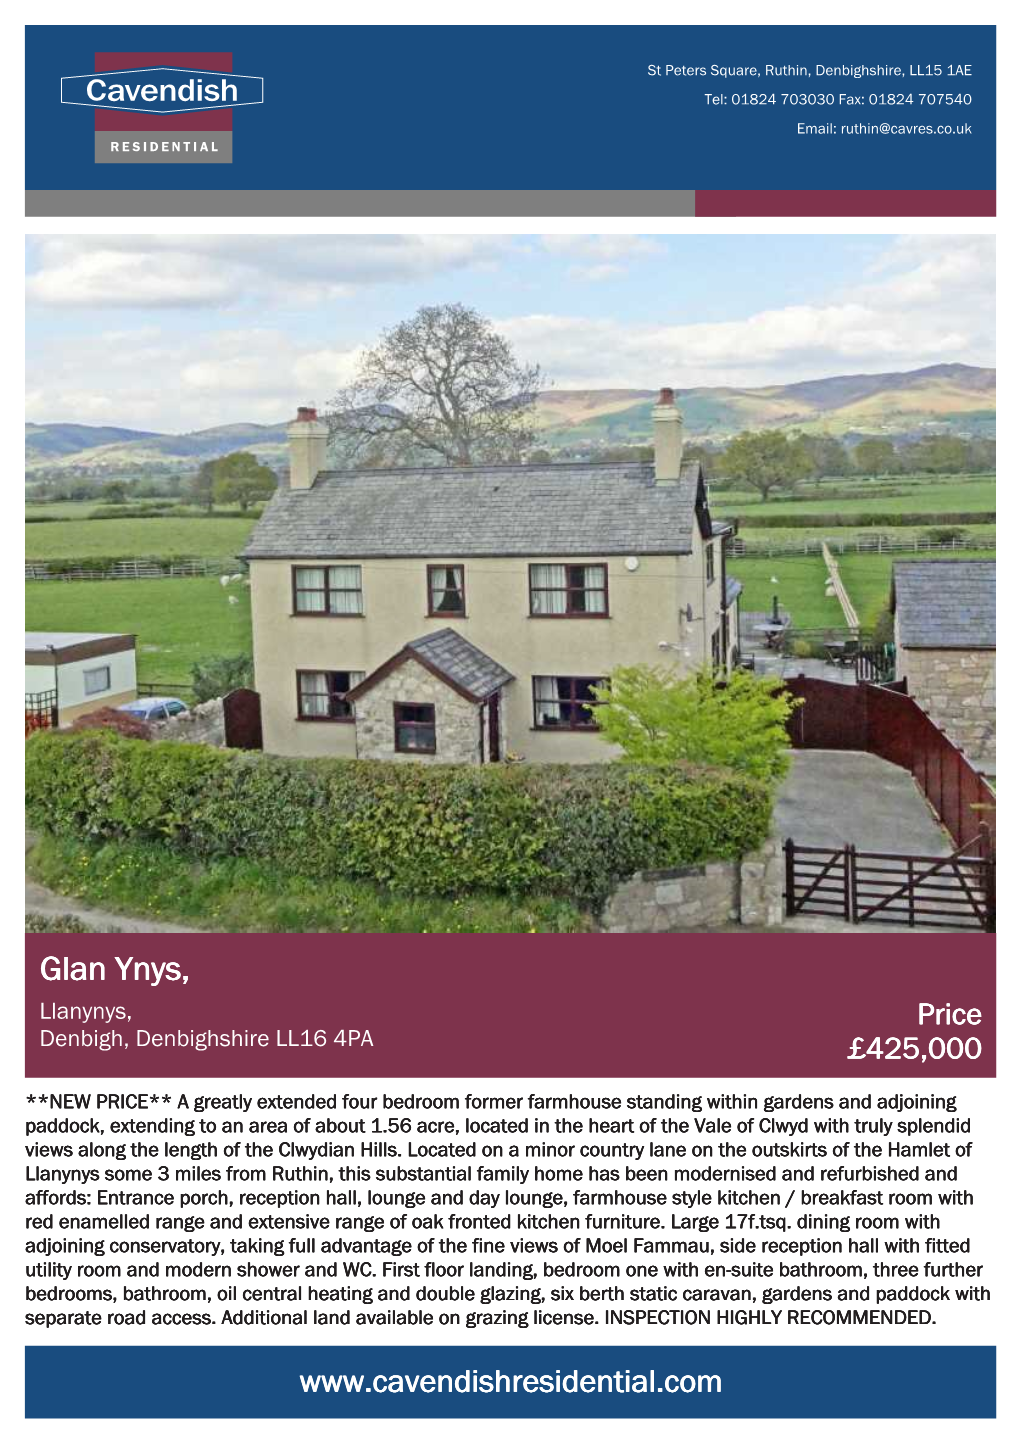 Glan Ynys, Llanynys, Price Denbigh, Denbighshire LL16 4PA £425,000